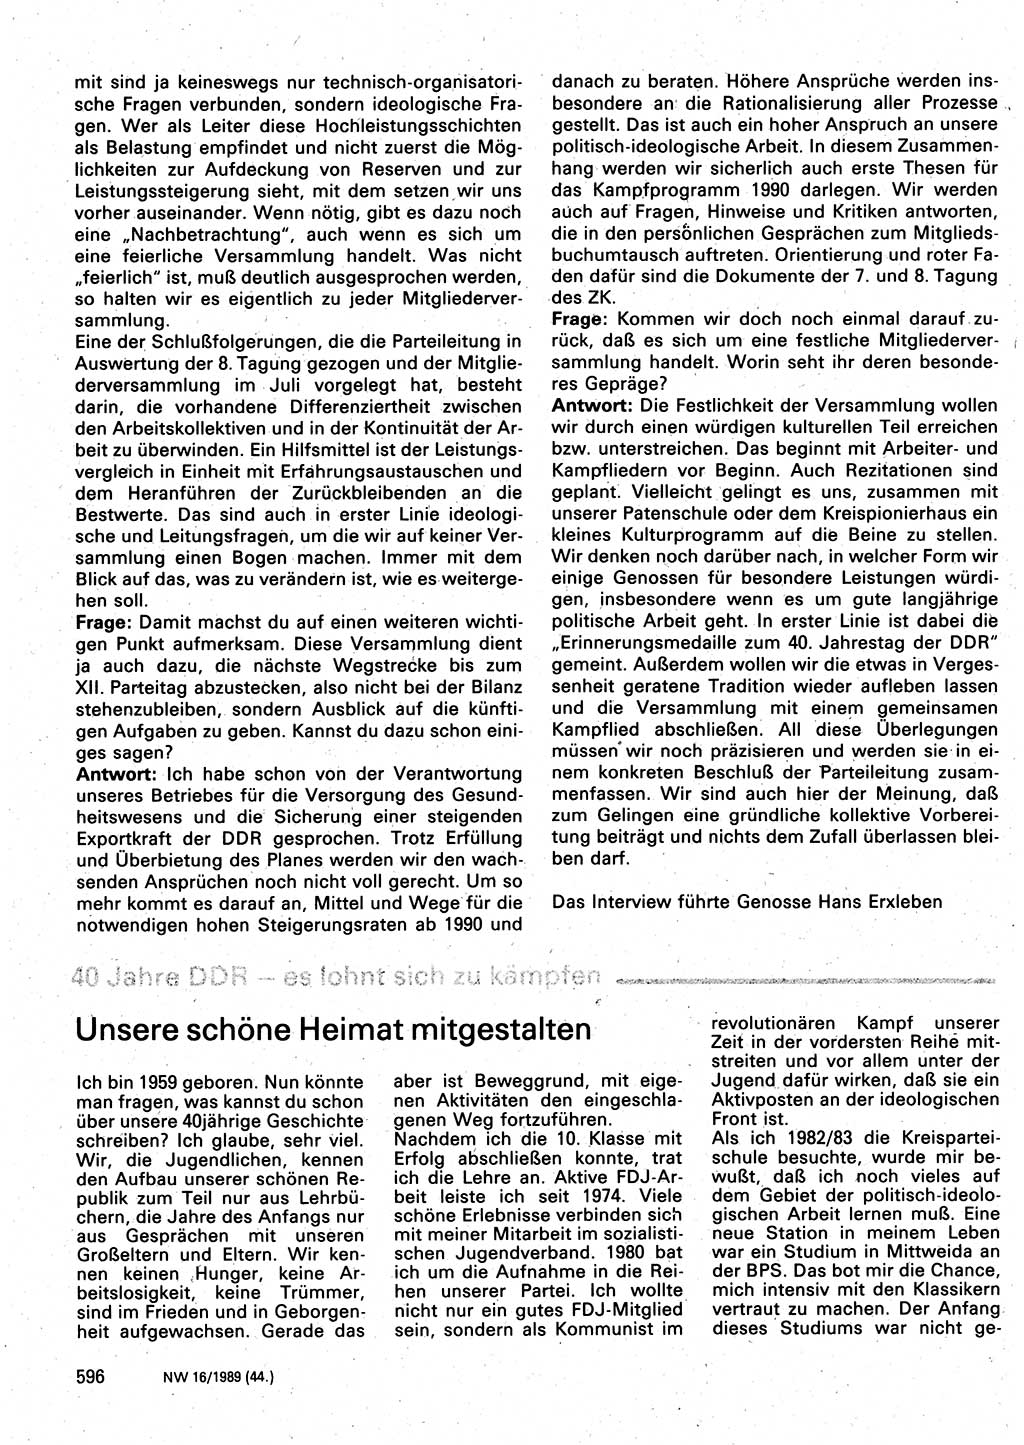 Neuer Weg (NW), Organ des Zentralkomitees (ZK) der SED (Sozialistische Einheitspartei Deutschlands) für Fragen des Parteilebens, 44. Jahrgang [Deutsche Demokratische Republik (DDR)] 1989, Seite 596 (NW ZK SED DDR 1989, S. 596)